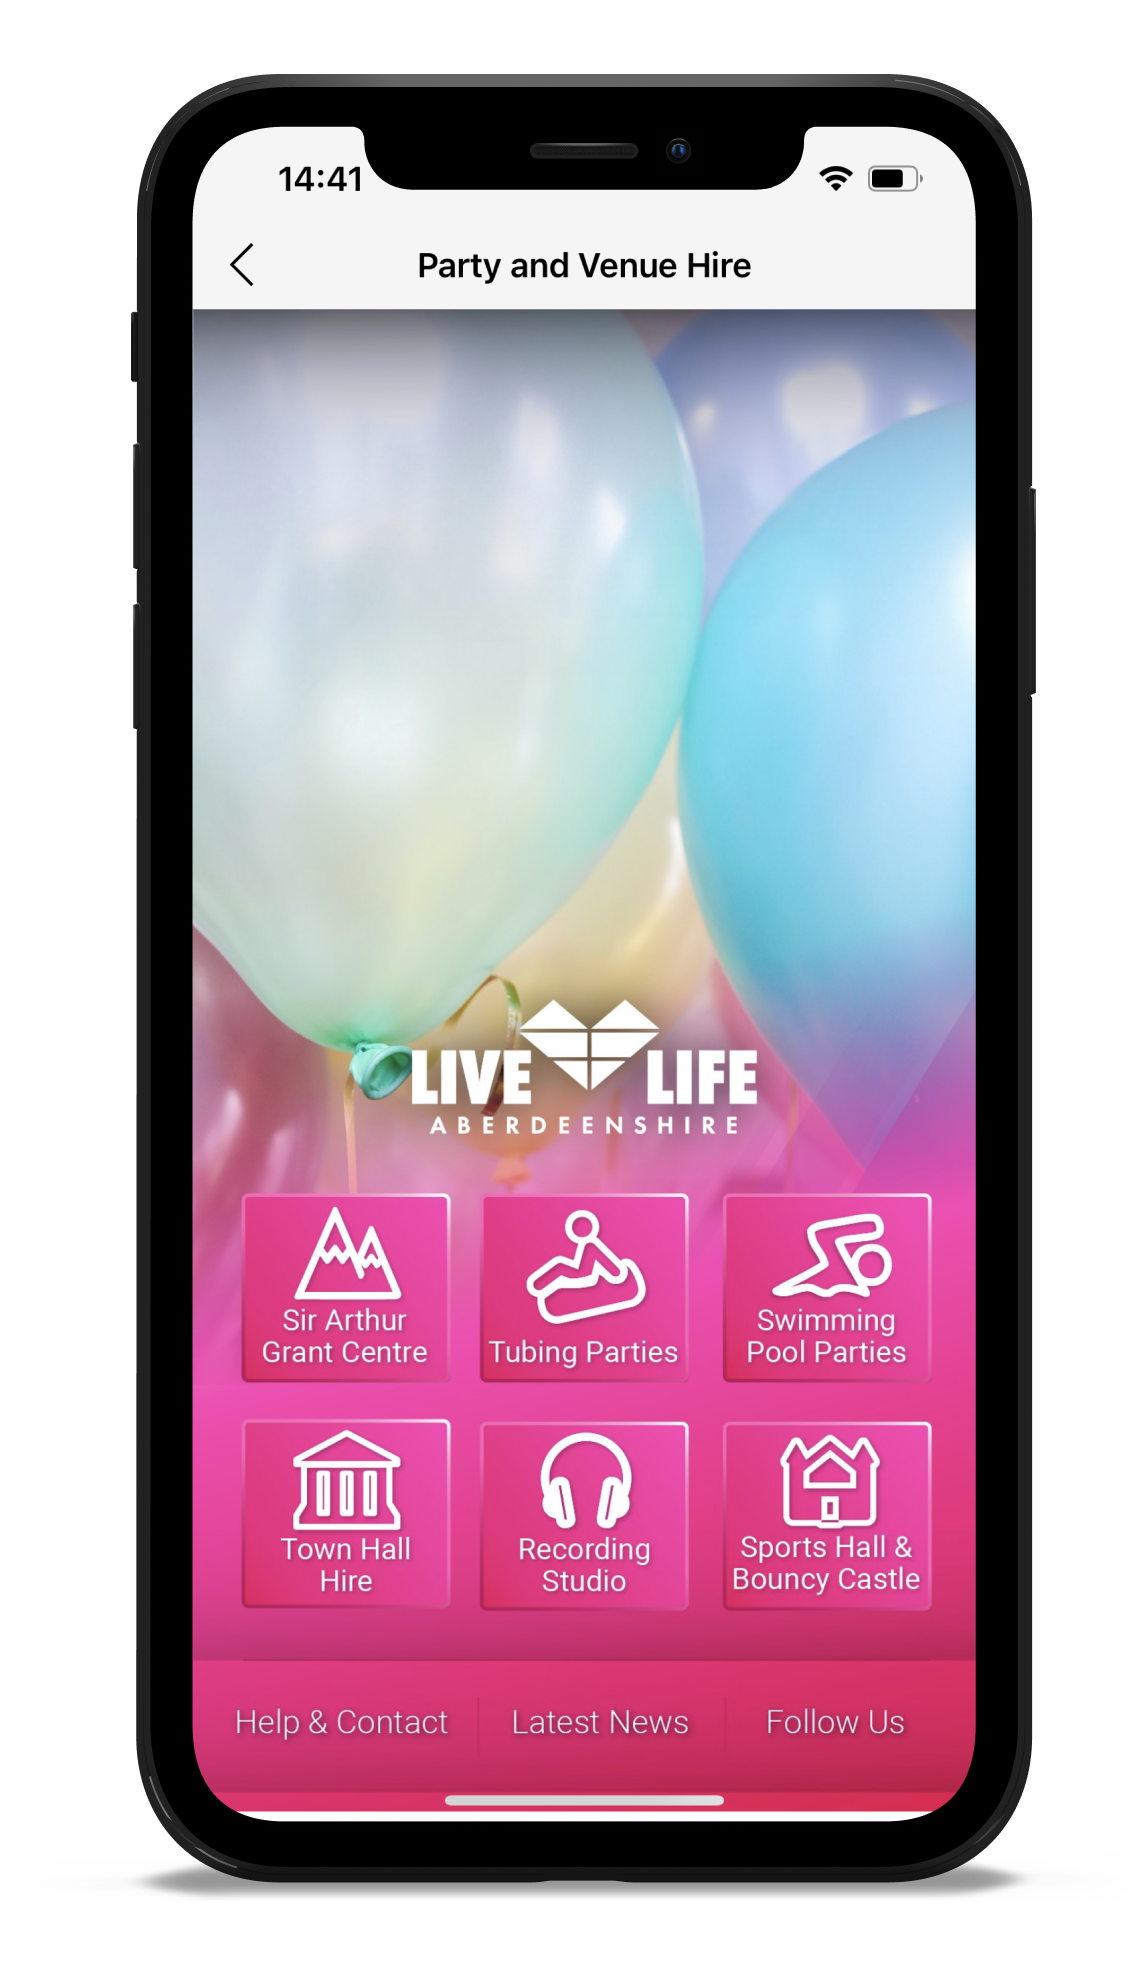 Live Life Aberdeenshire App design